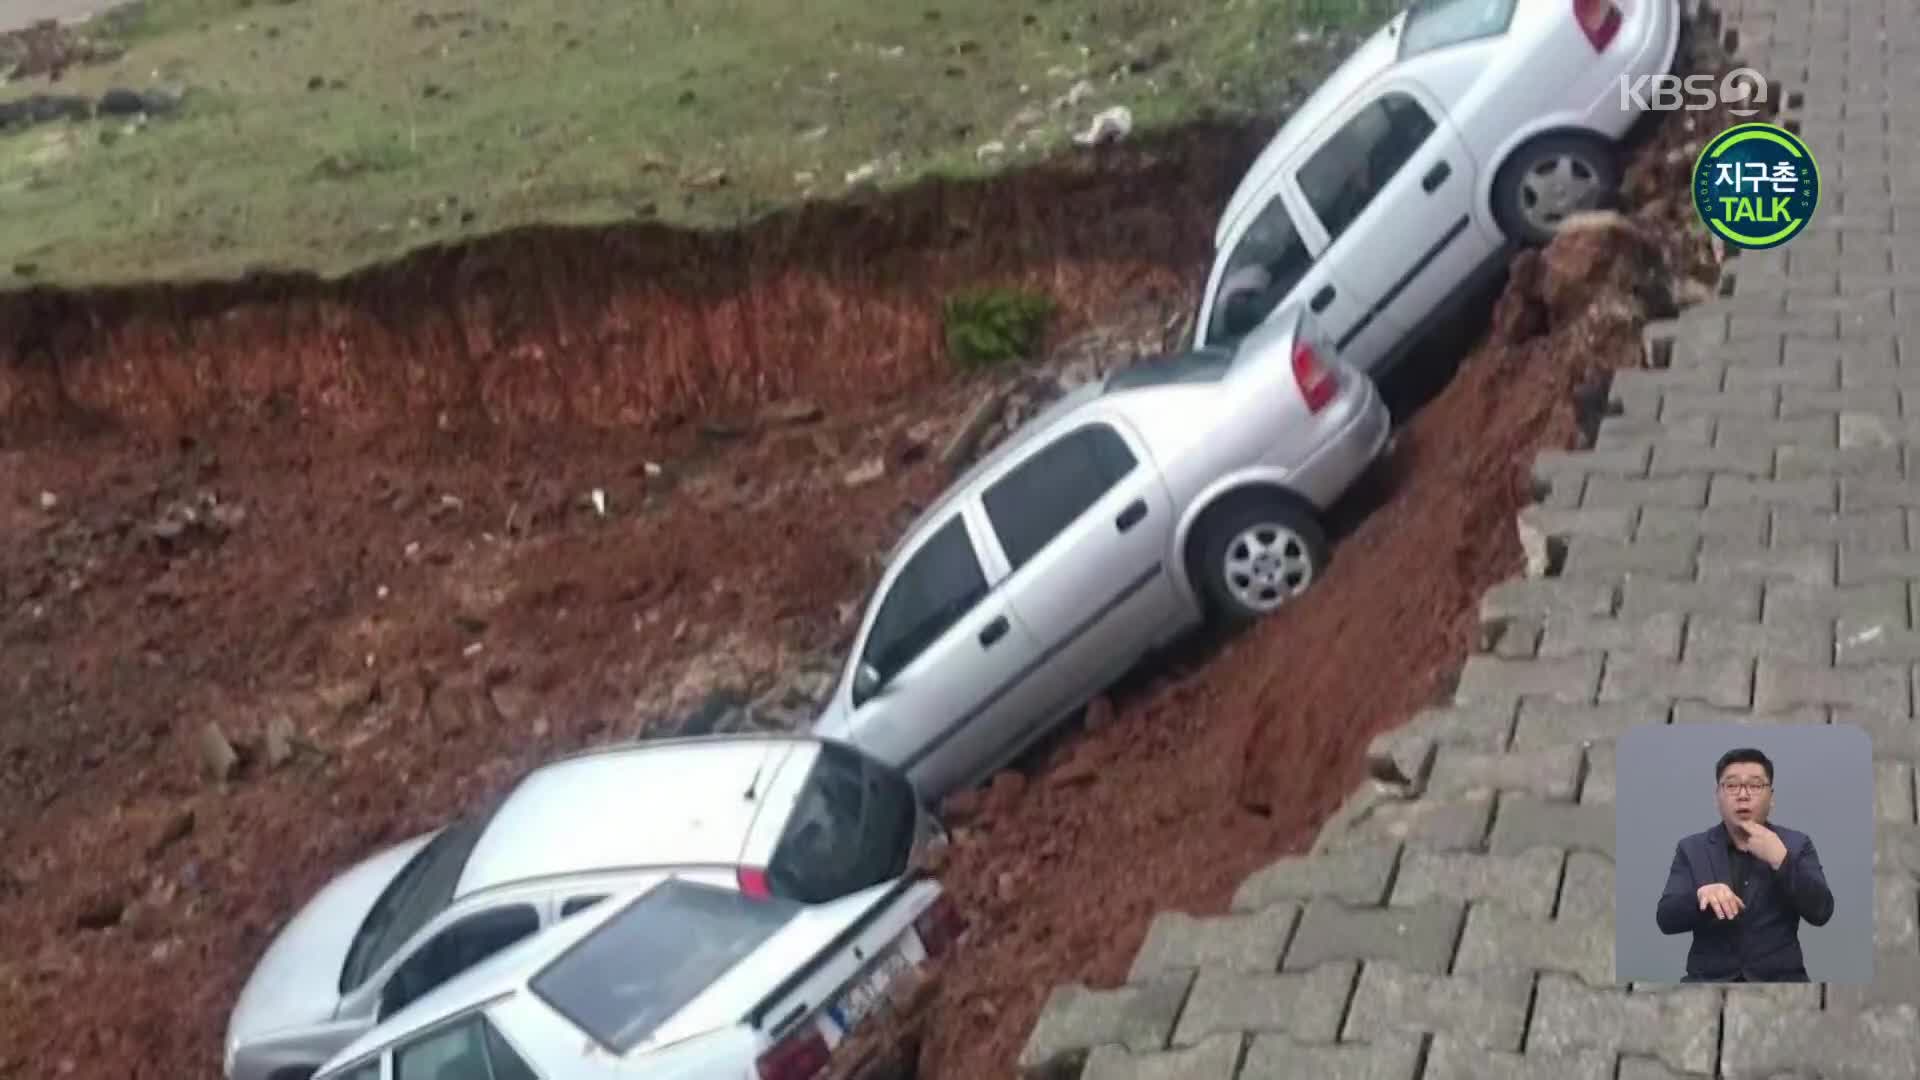 [지구촌 Talk] 터키 샨르우르파, 한꺼번에 땅속으로 미끄러져 사라진 차량 6대